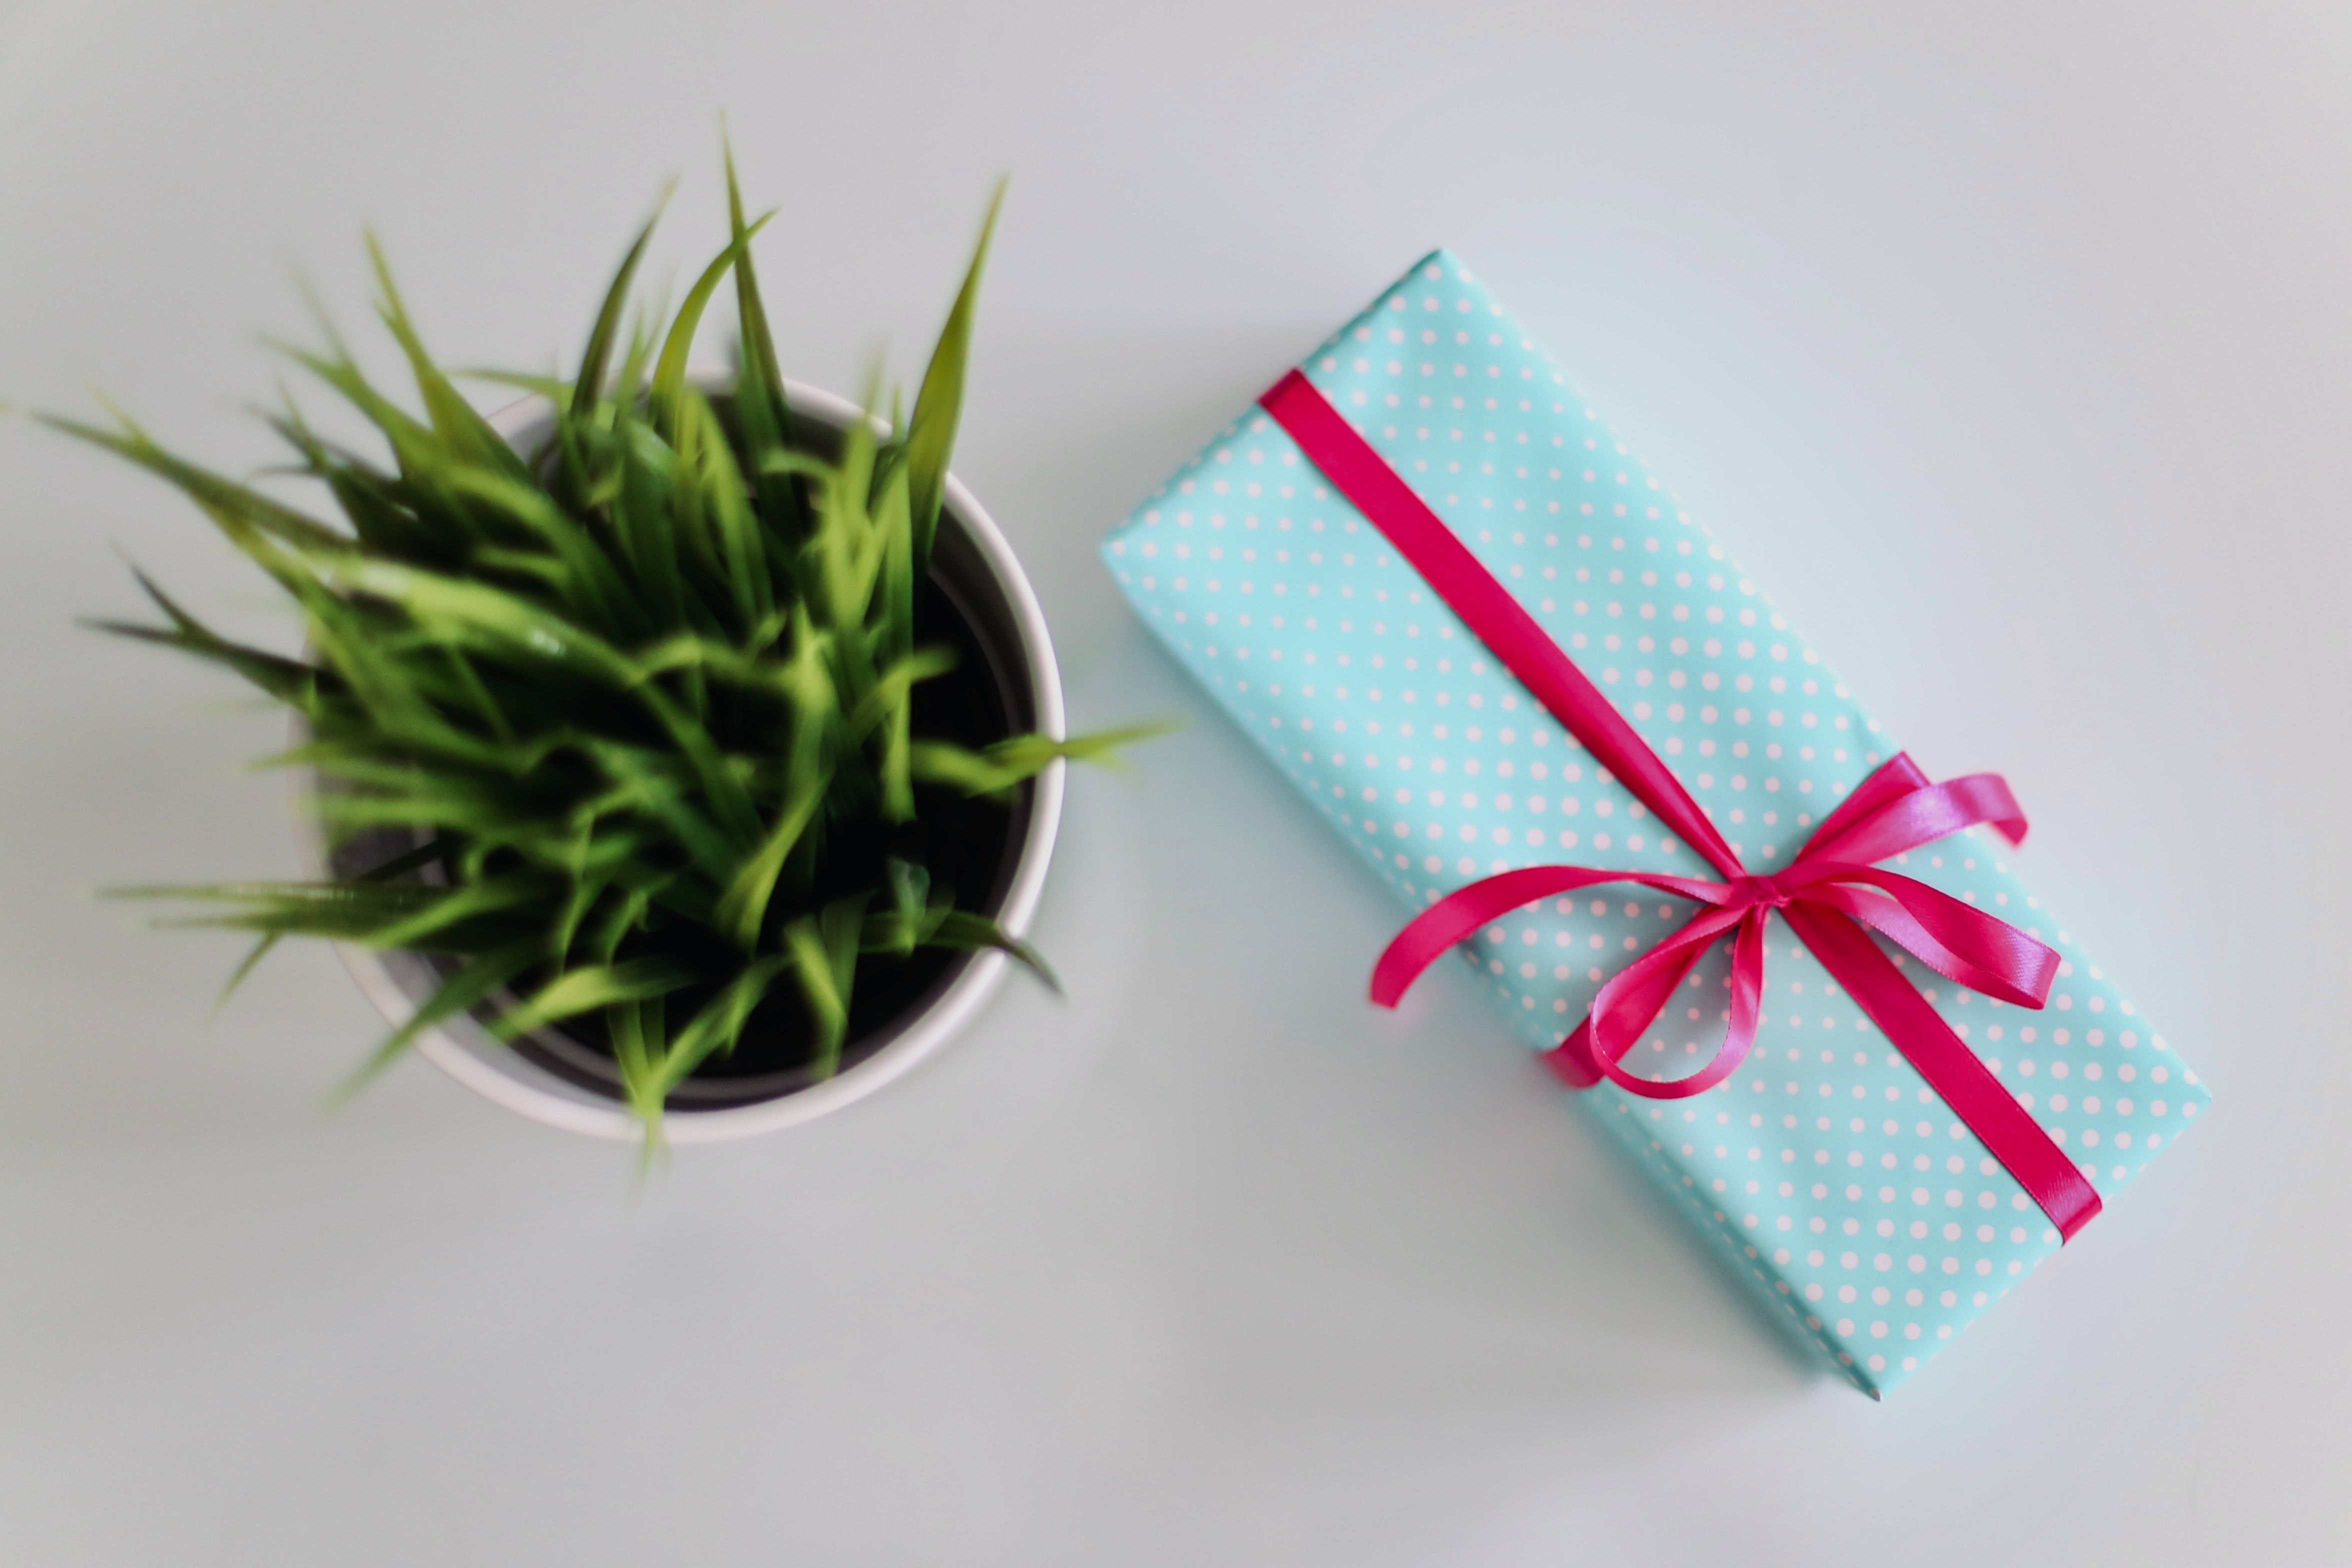 Что подарить зятю на день рождения — идеи лучших подарков мужу дочки от тестя и тещи